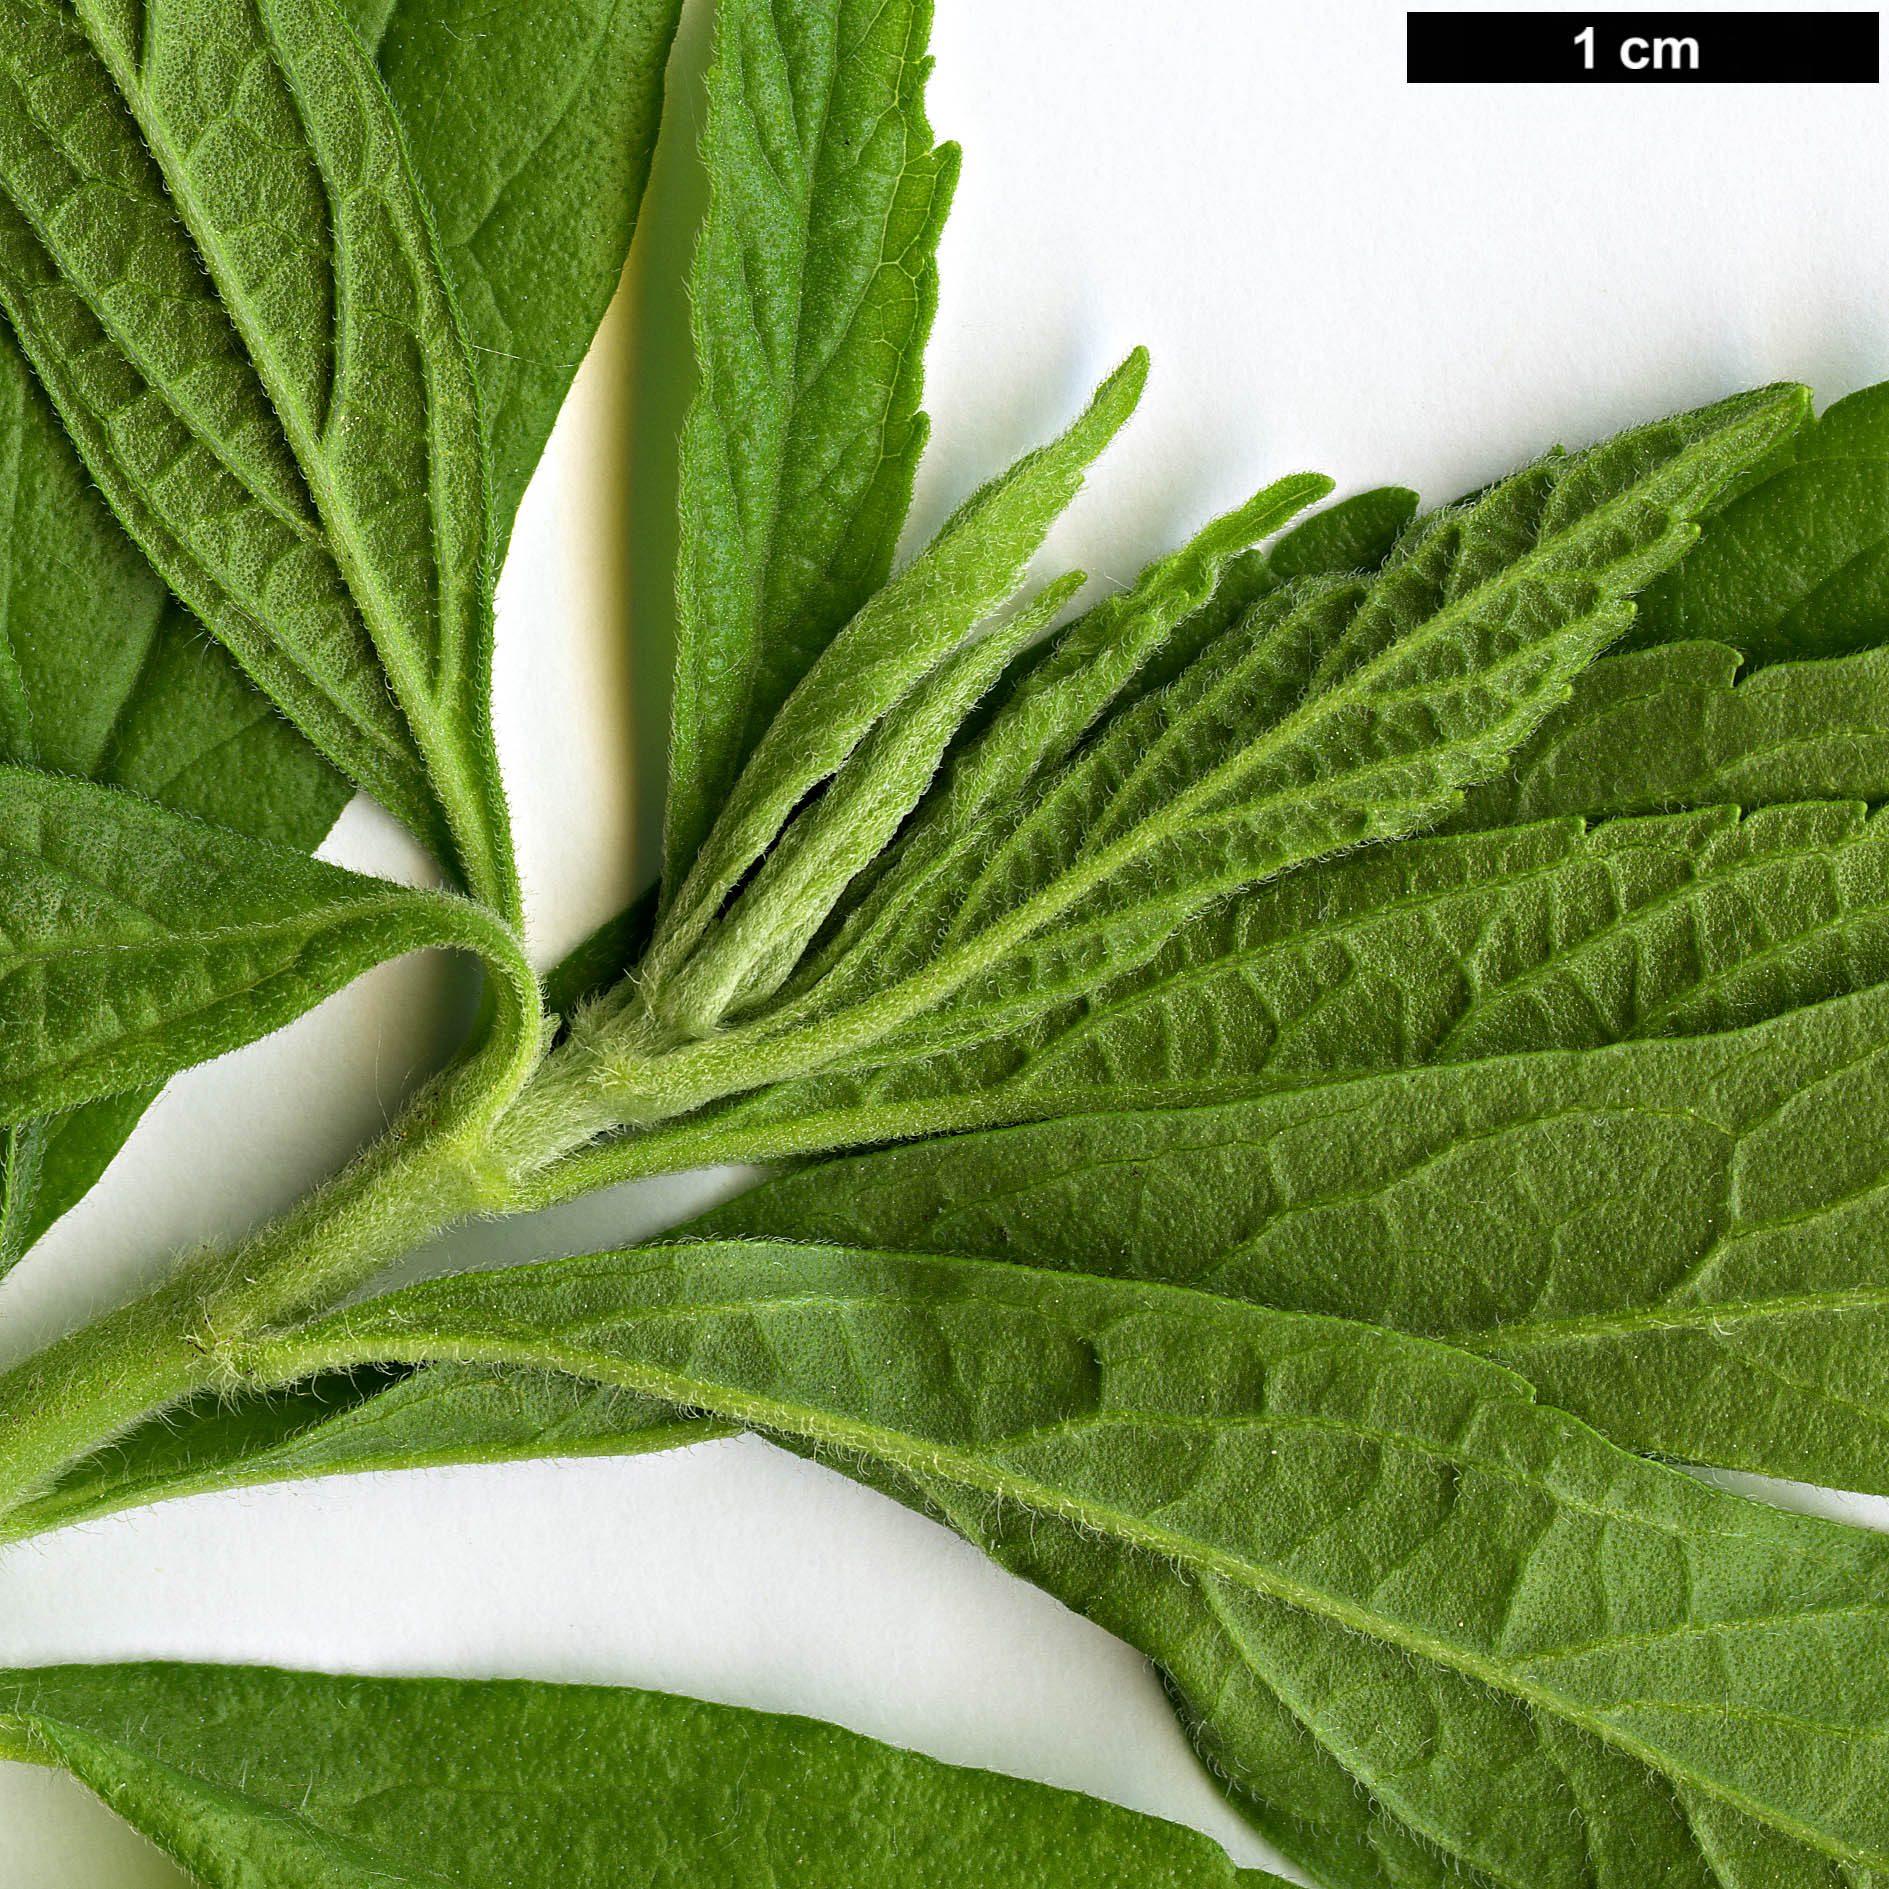 High resolution image: Family: Lamiaceae - Genus: Leonotis - Taxon: leonurus